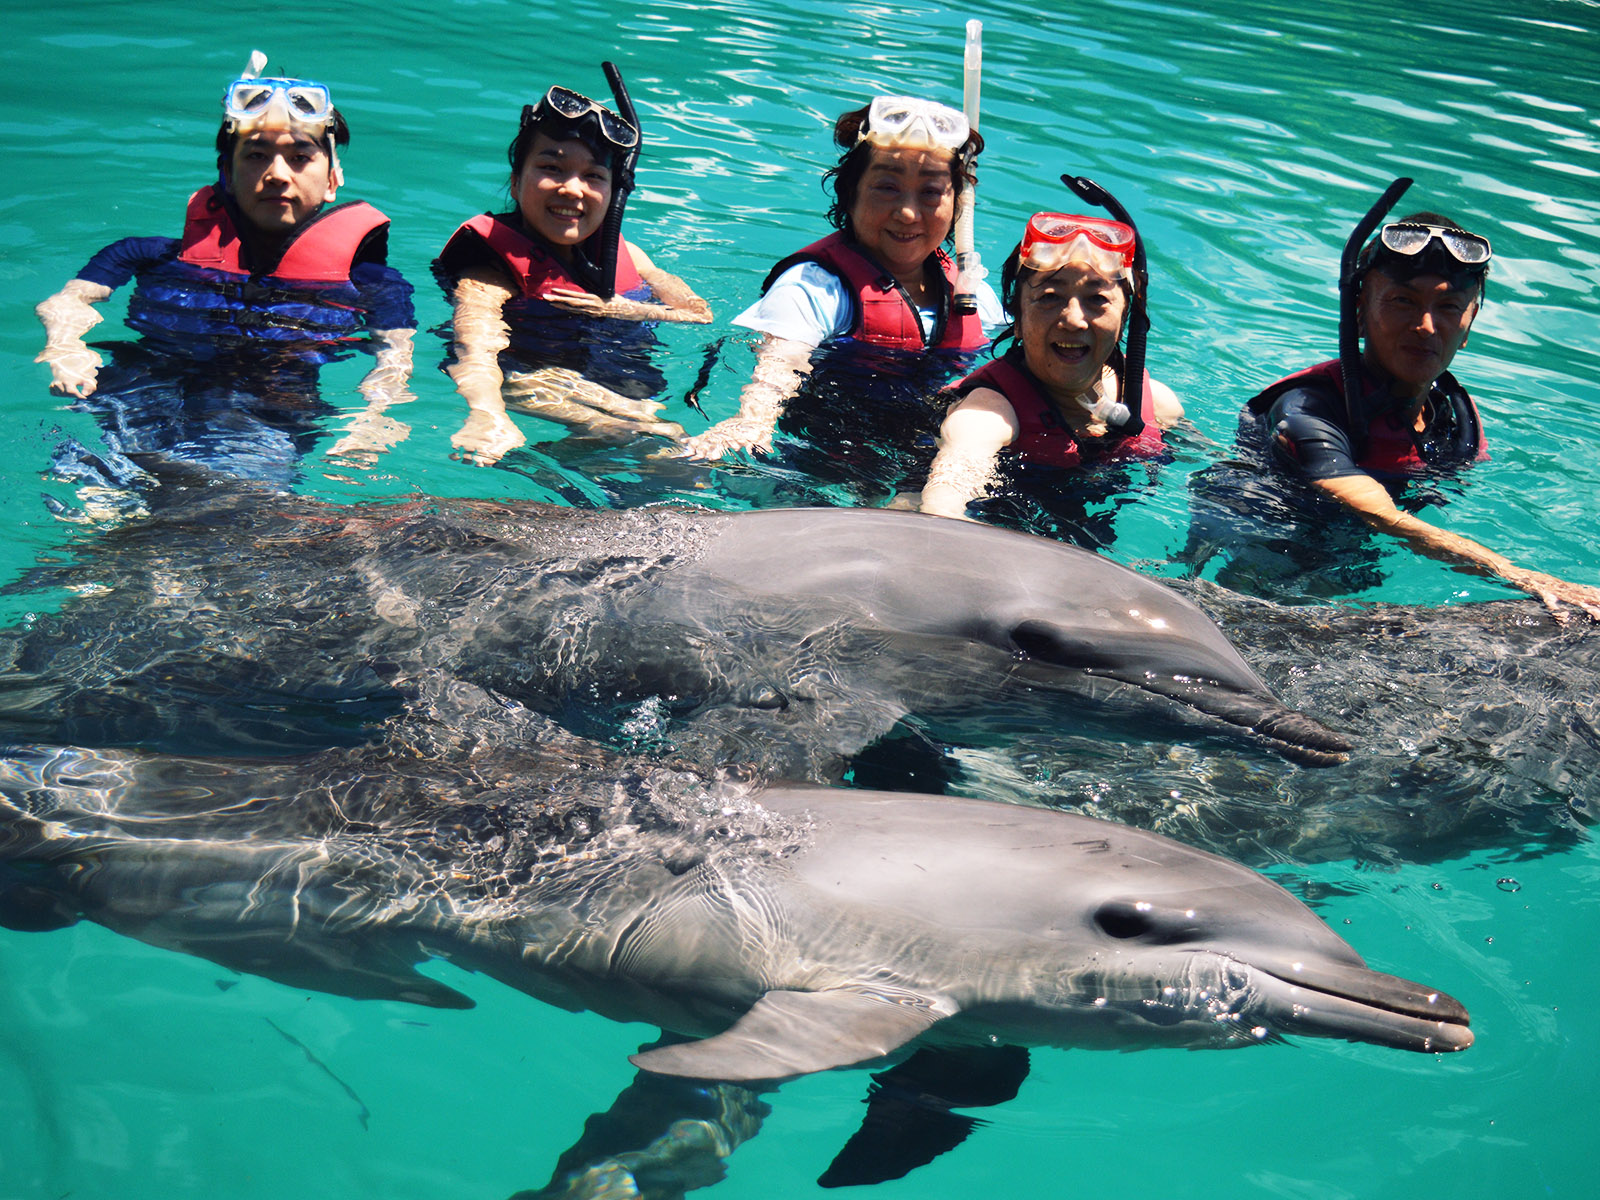 ドルフィンスイムを楽しめる海外スポット6選 野生のイルカと泳ぐアクティビティツアー パラオタイムス Palau Times